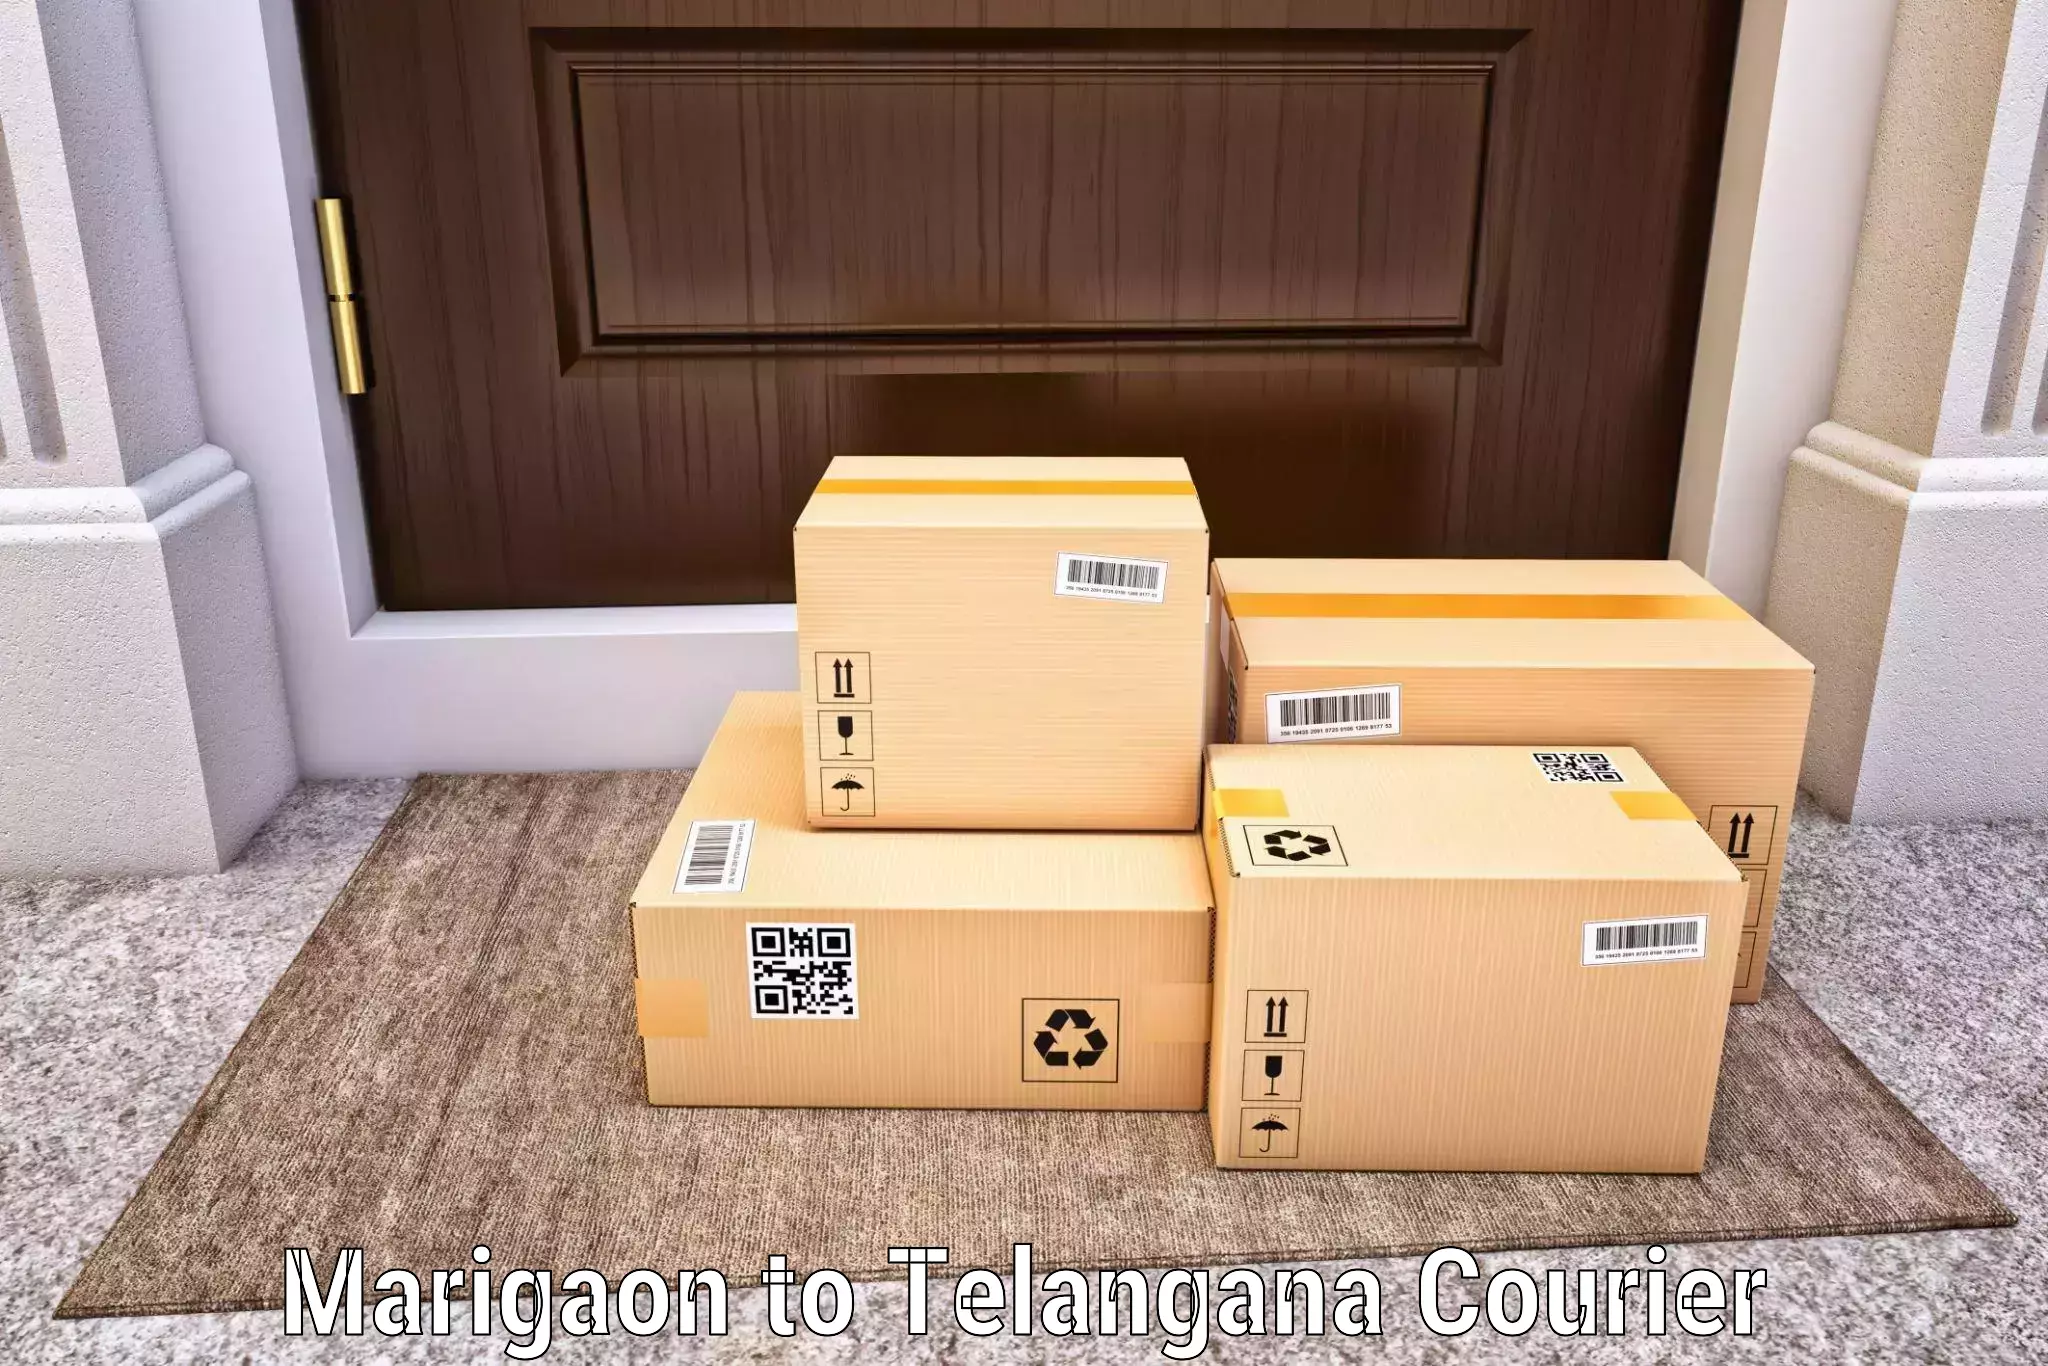 Tech-enabled shipping Marigaon to Kakeshwaram